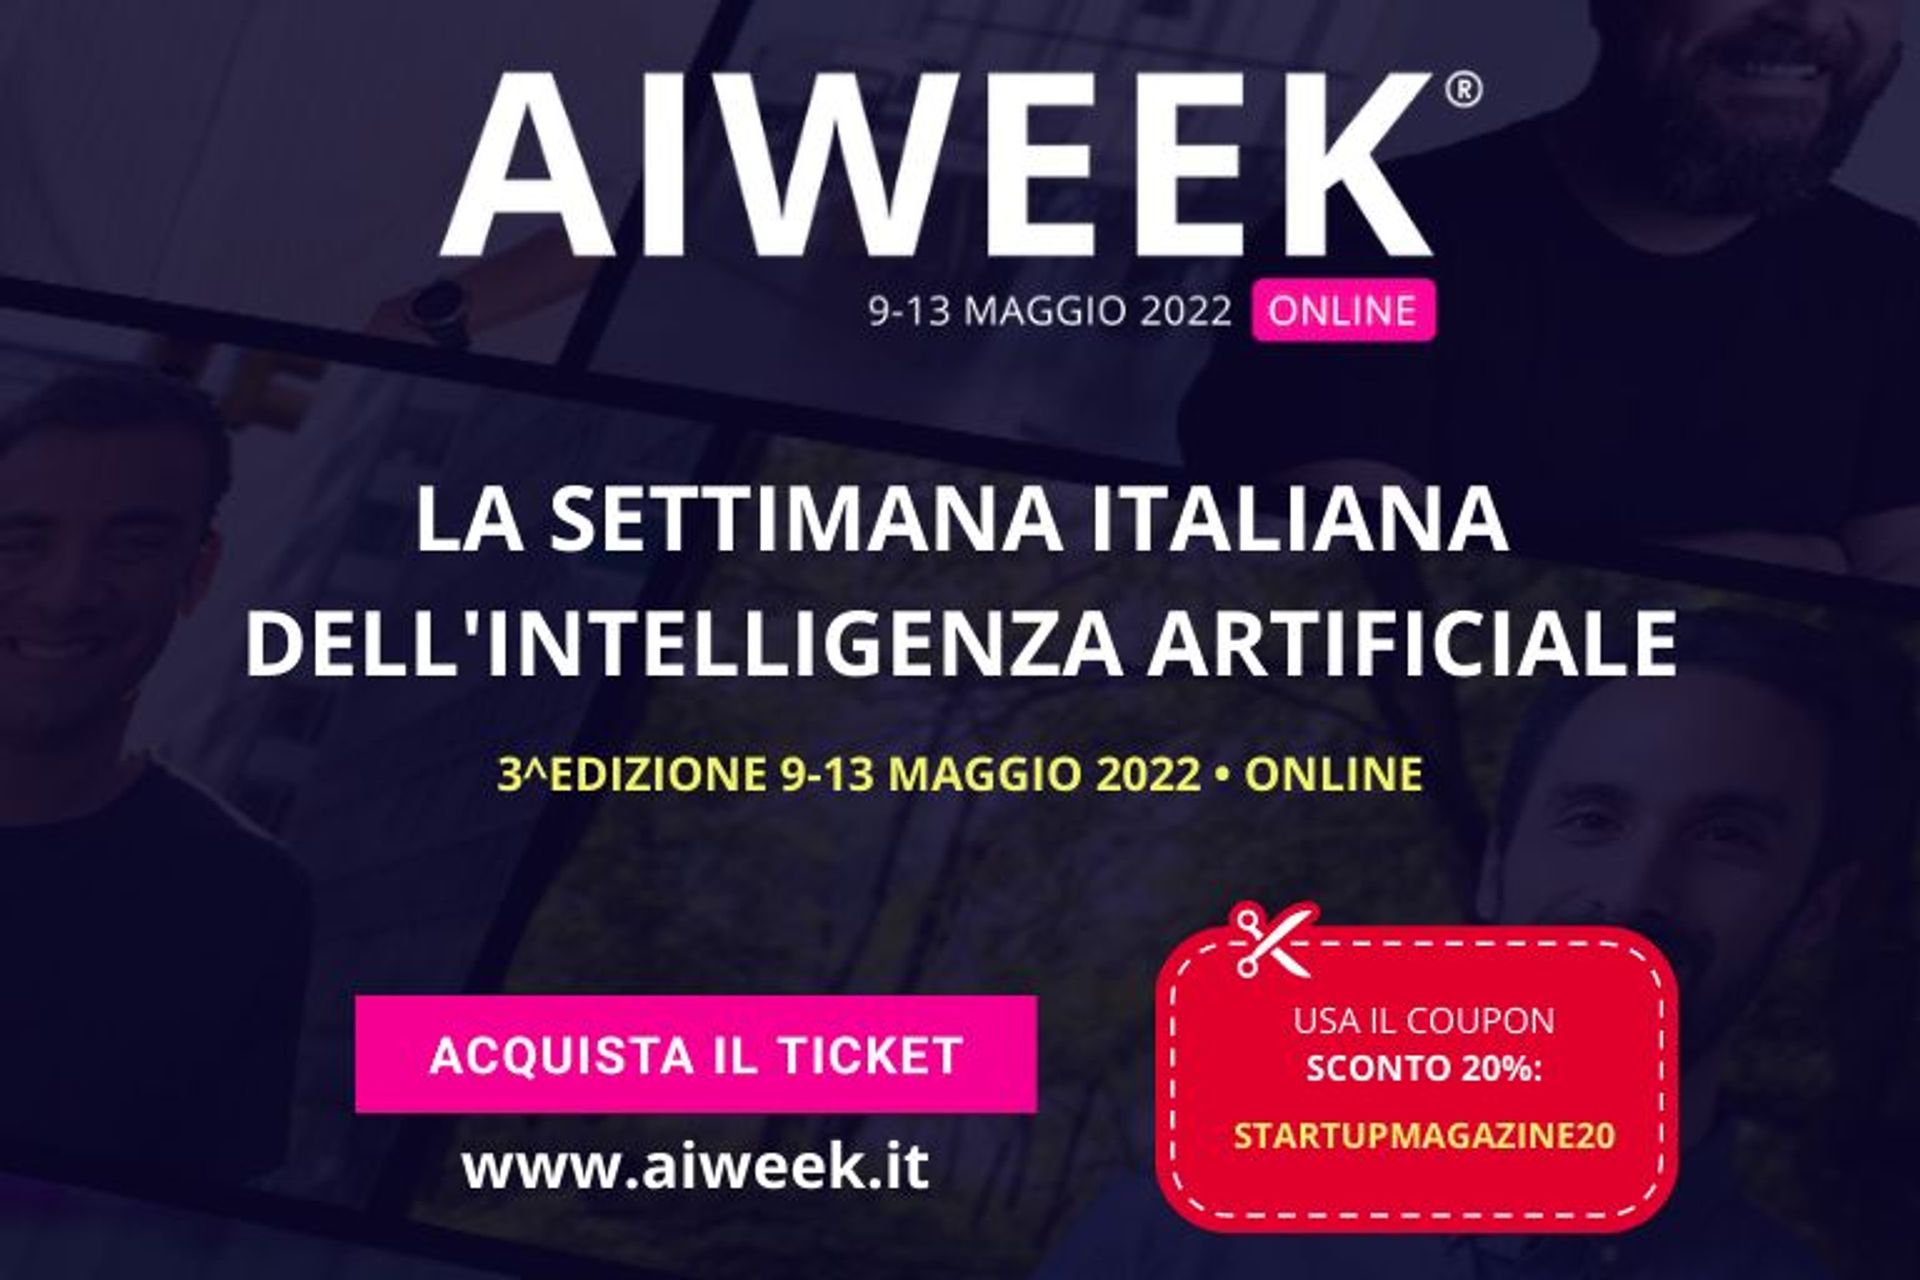 La frazione superiore della pagina per stampa e la locandina della “AI Week - settimana italiana dell'intelligenza artificiale”